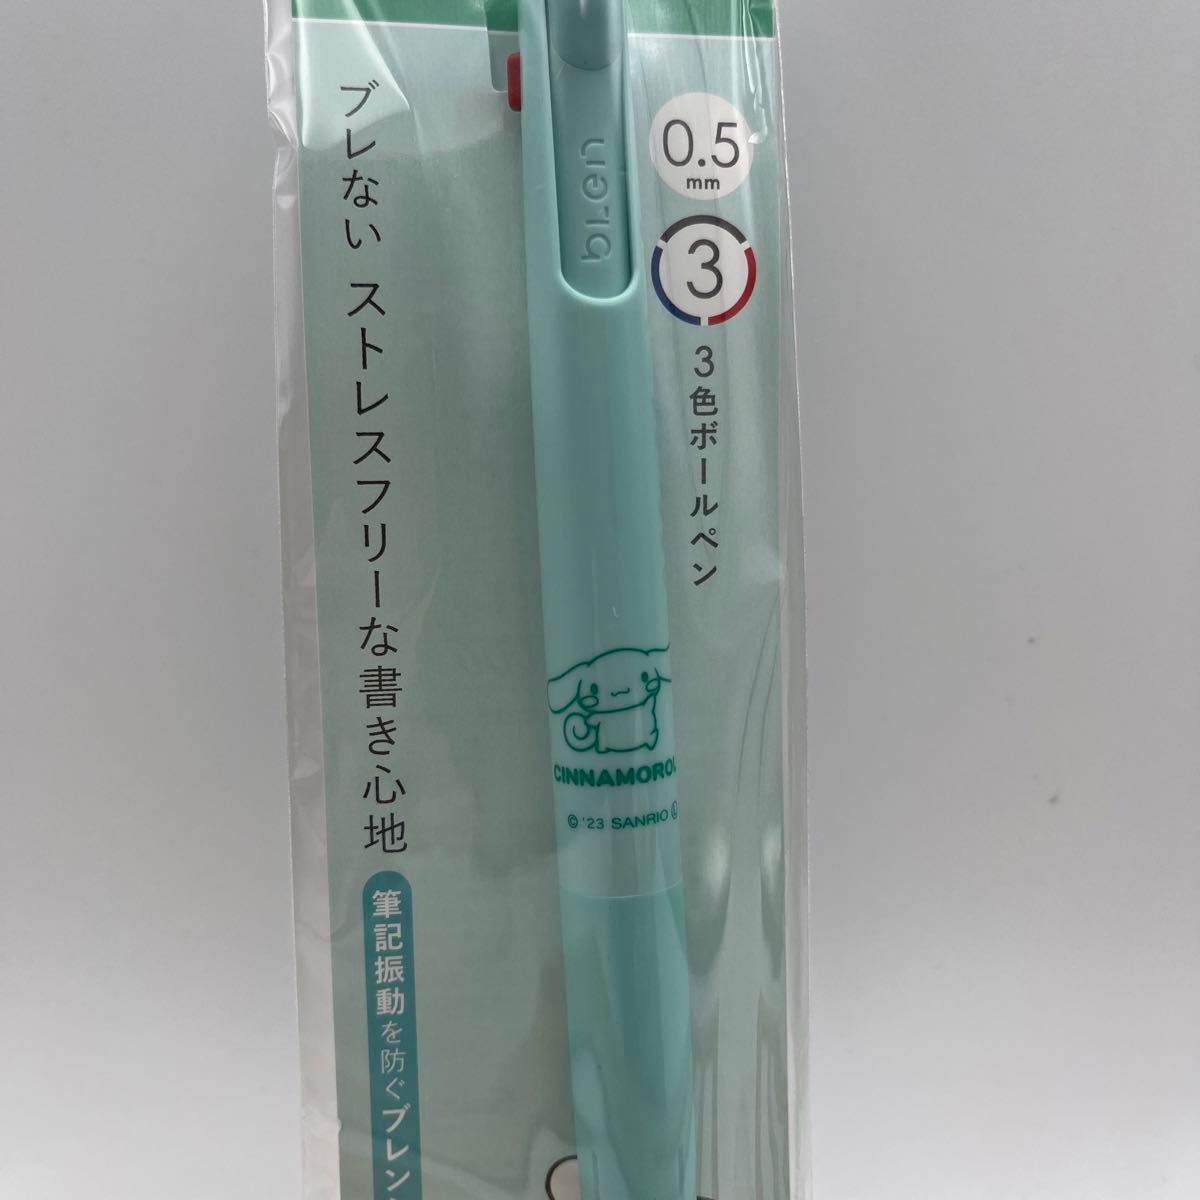 ★新品★シナモロール BLEN ブレン3C 0.5mm 3色ボールペン サンリオ